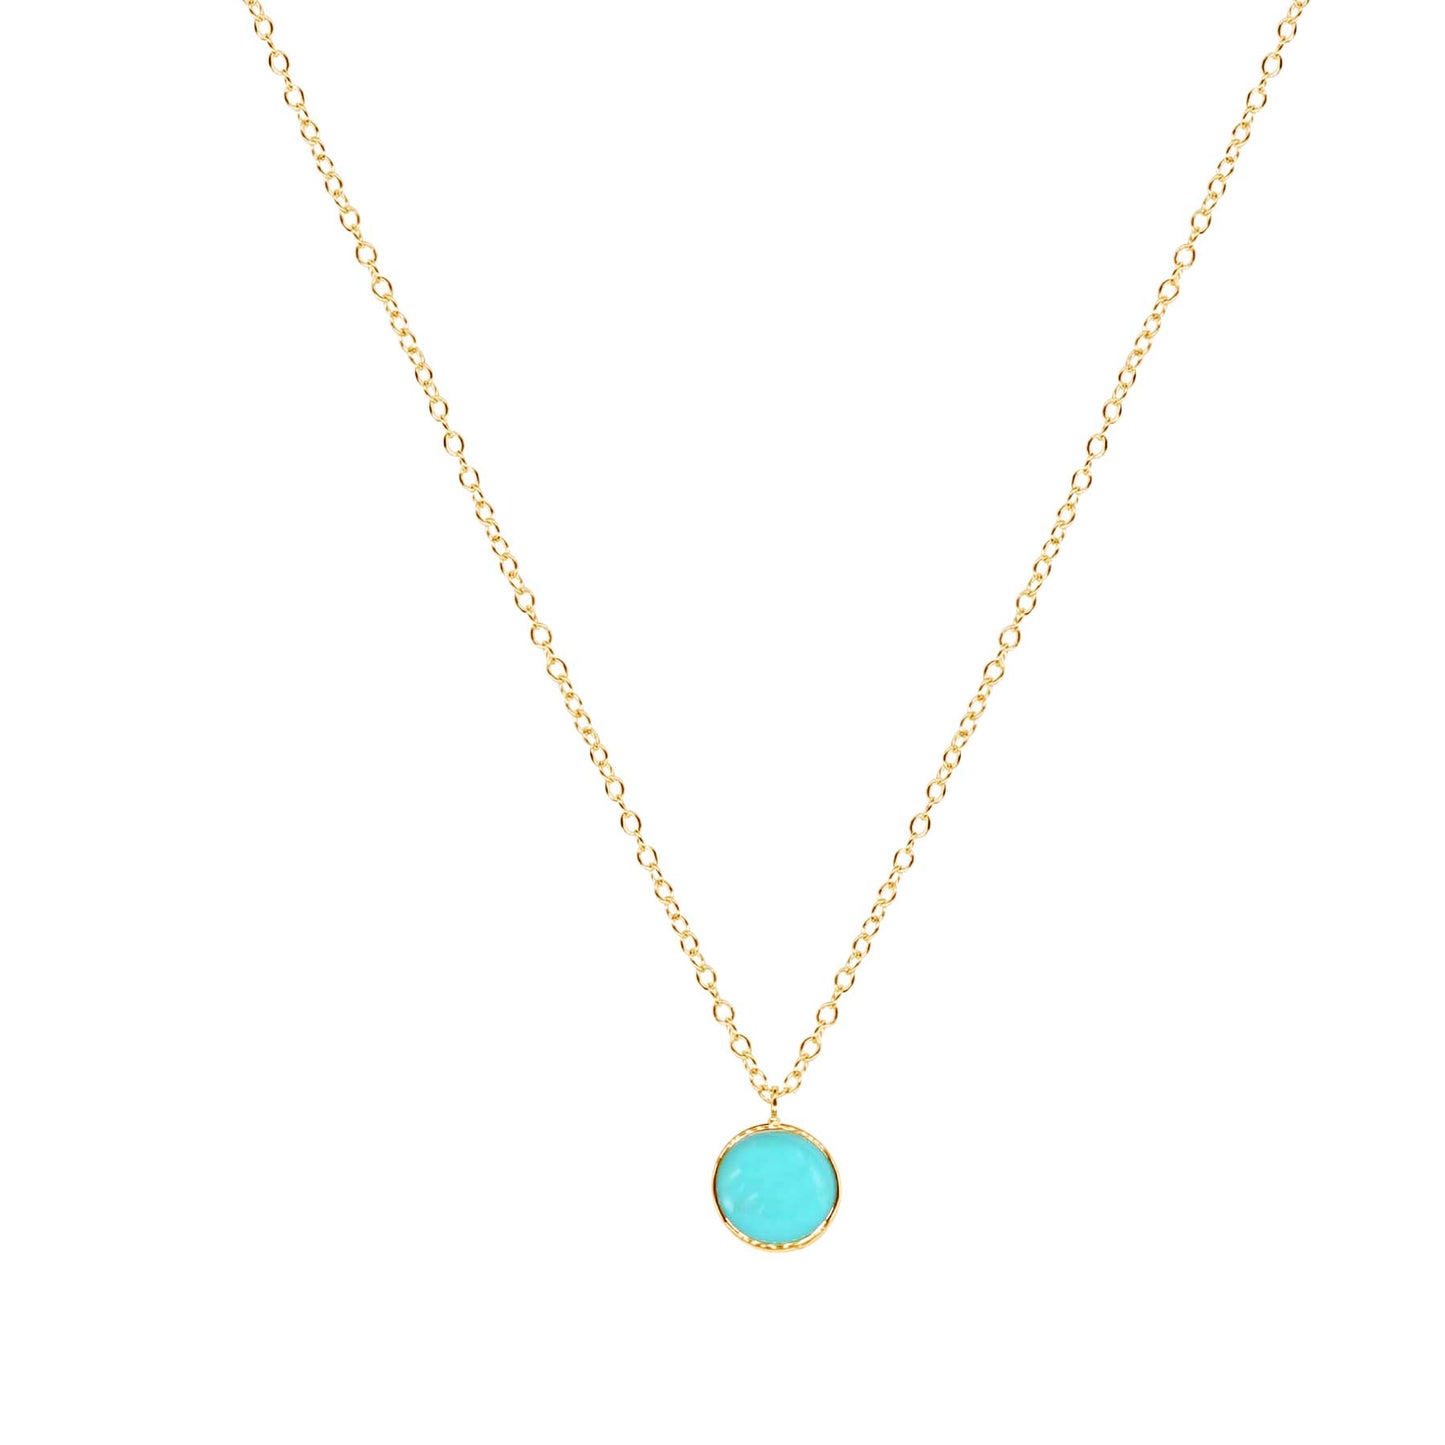 14k Turquoise Round Bezel Pendant Necklace 17"